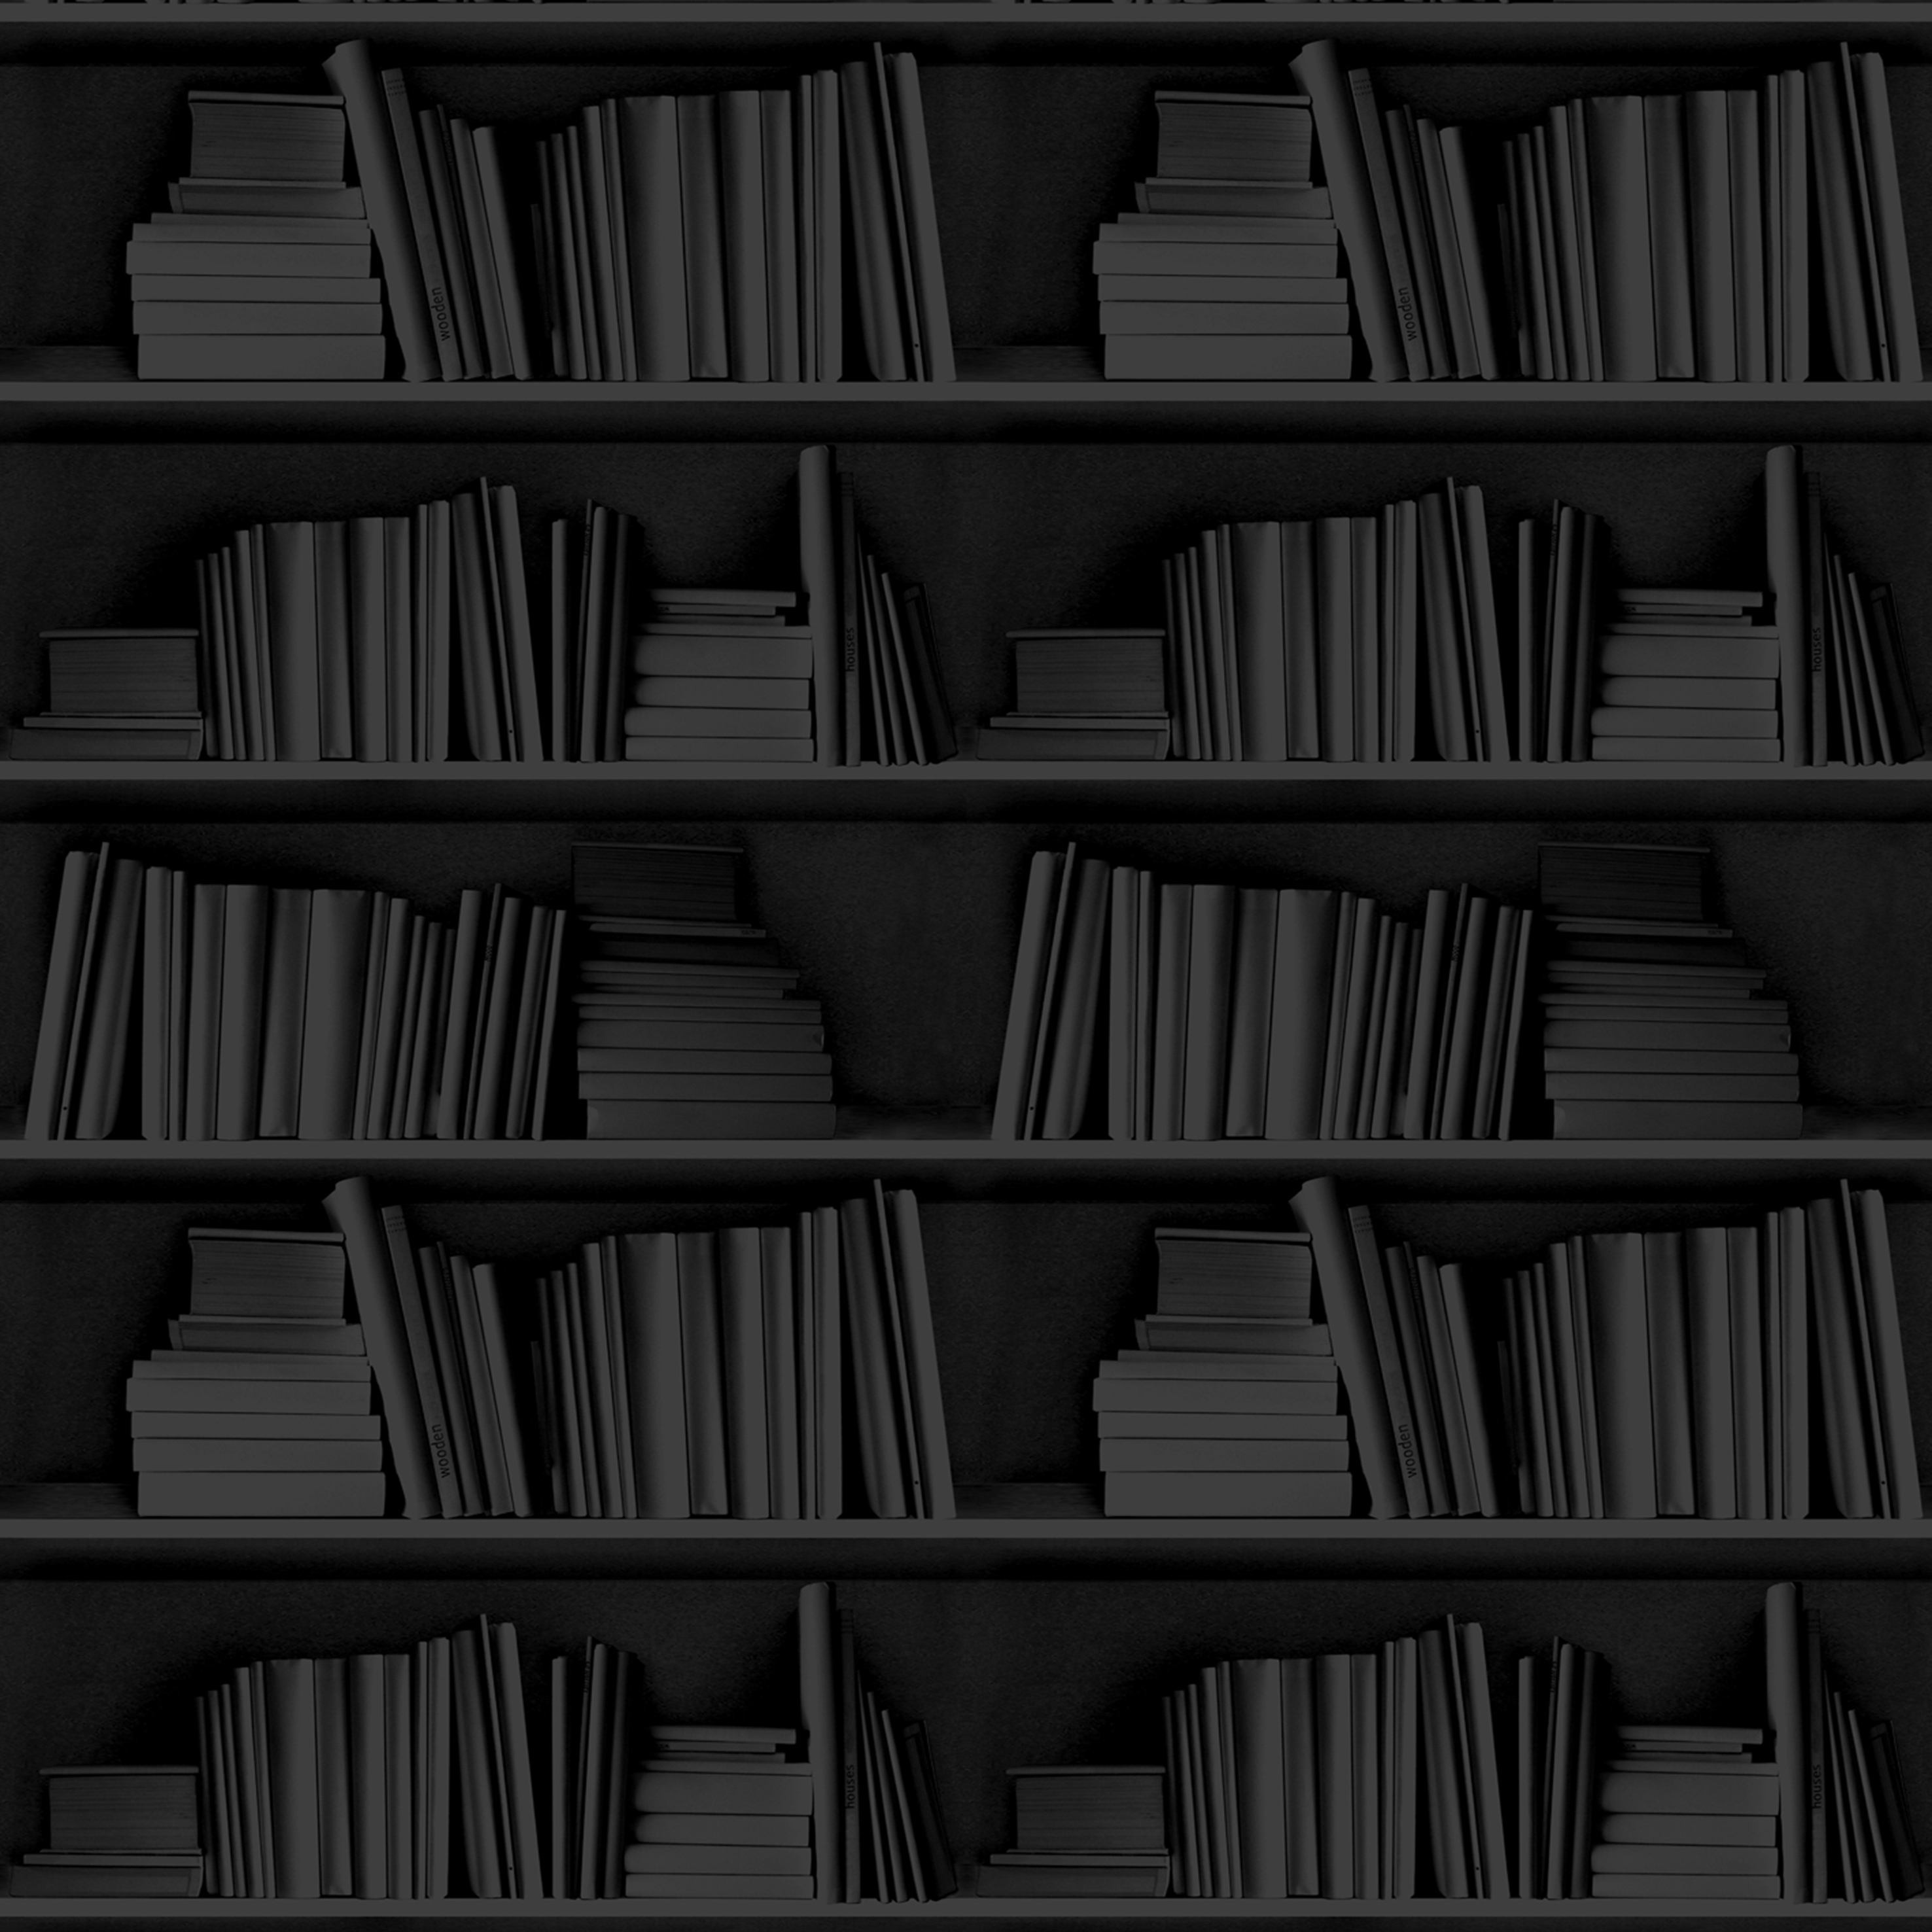 Black Bookshelf Wallpaper from Studiomold | Made By Mineheart ...